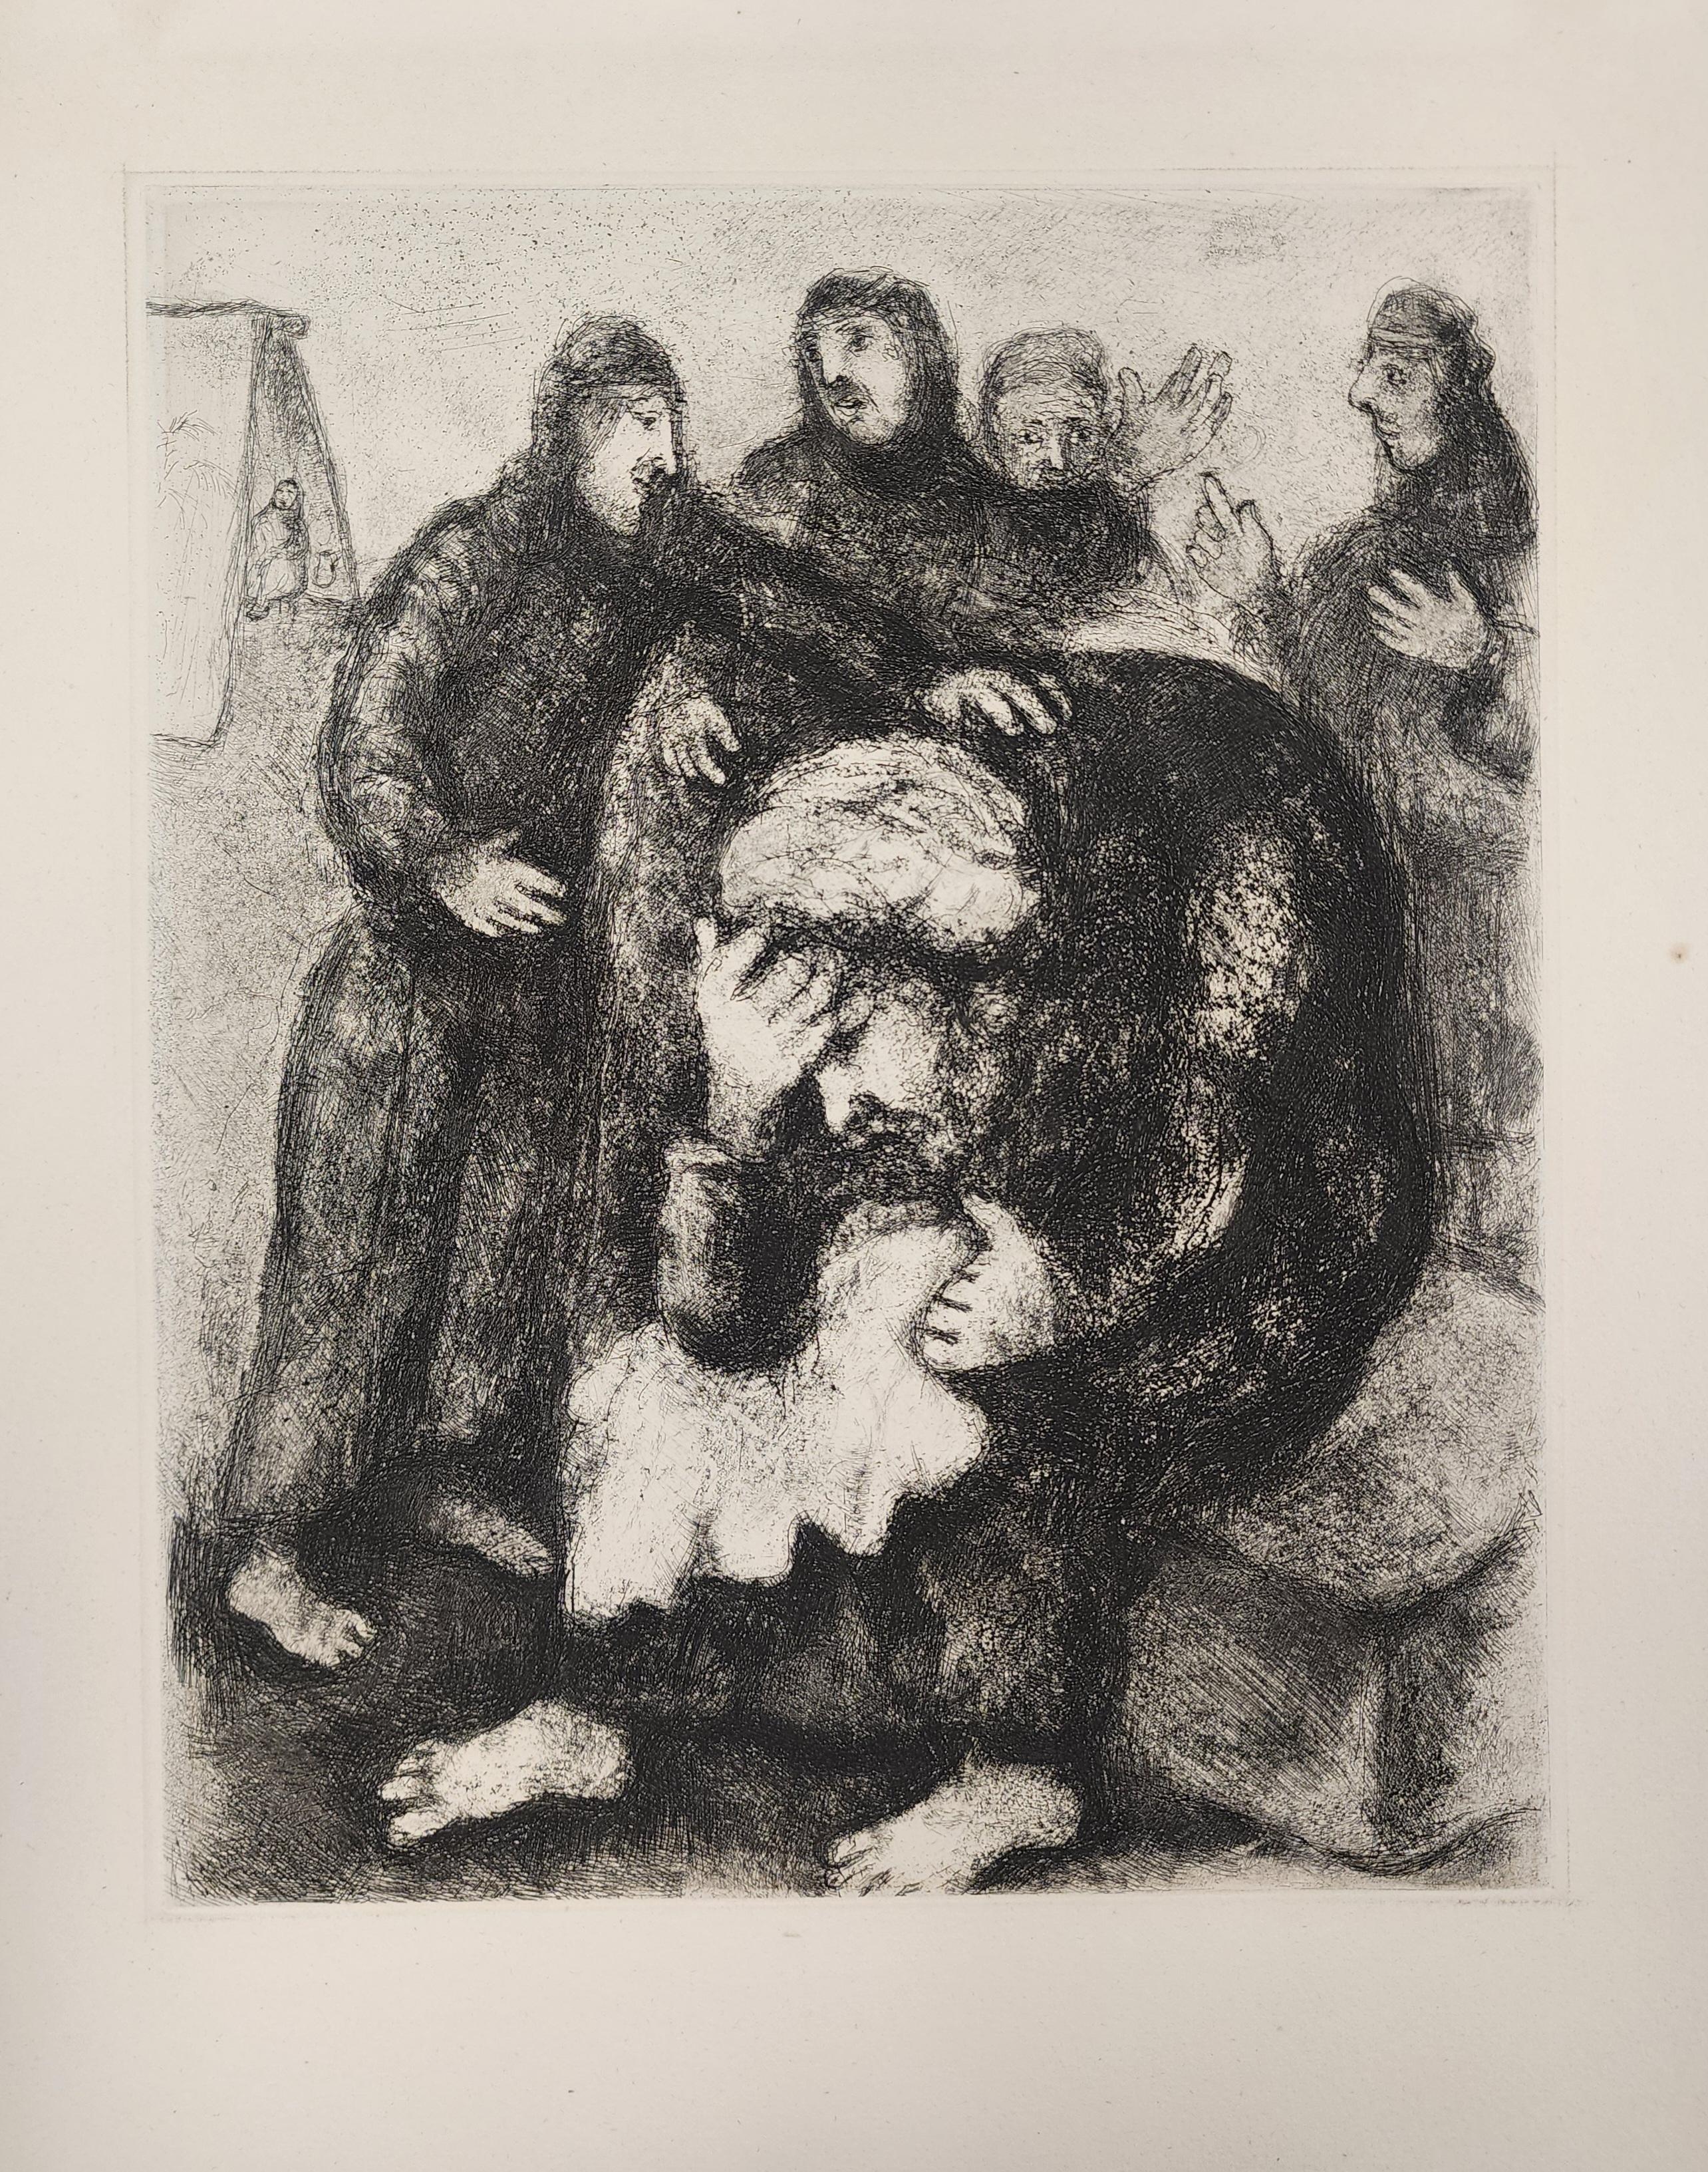 Beschreibung
Künstler: Marc Chagall
Titel: Jakob weint um Joseph
Jahr: 1956
Abmessungen: 16.12" W: 12.37"
Medium: Radierung, unsigniert
Zustand: Ausgezeichnet

Nachdem Chagall seine Radierungen für The Fables (1930) fertiggestellt hatte, bot Vollard